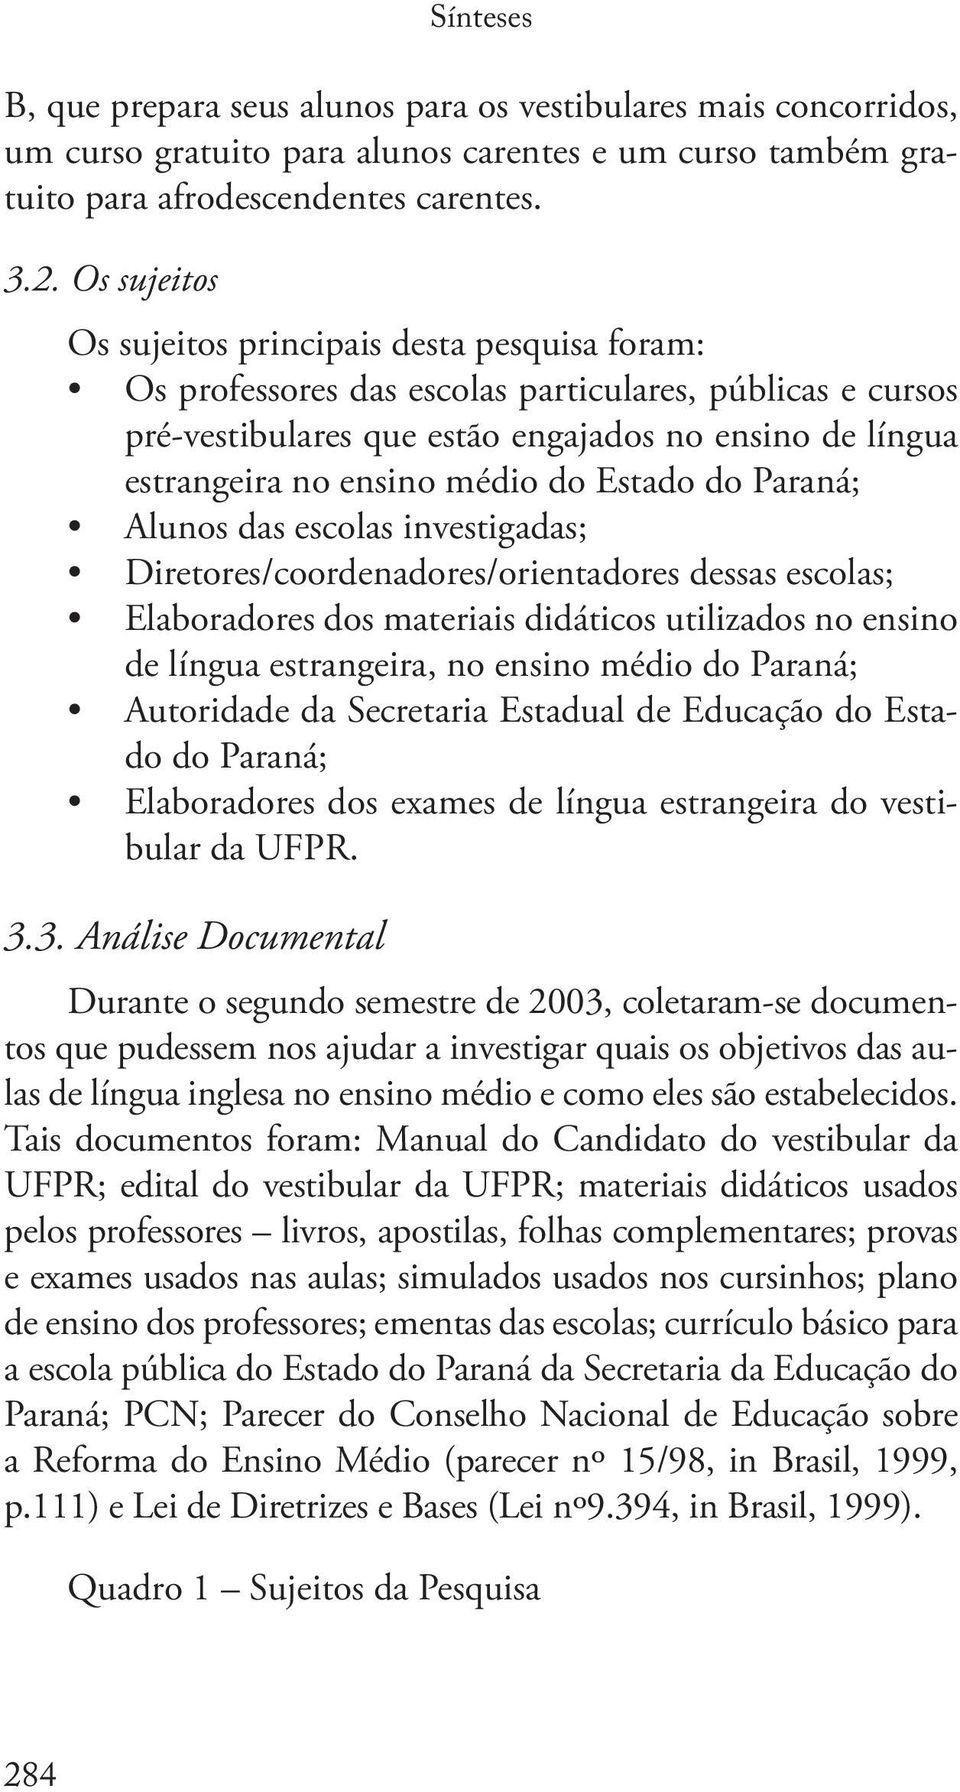 médio do Estado do Paraná; Alunos das escolas investigadas; Diretores/coordenadores/orientadores dessas escolas; Elaboradores dos materiais didáticos utilizados no ensino de língua estrangeira, no